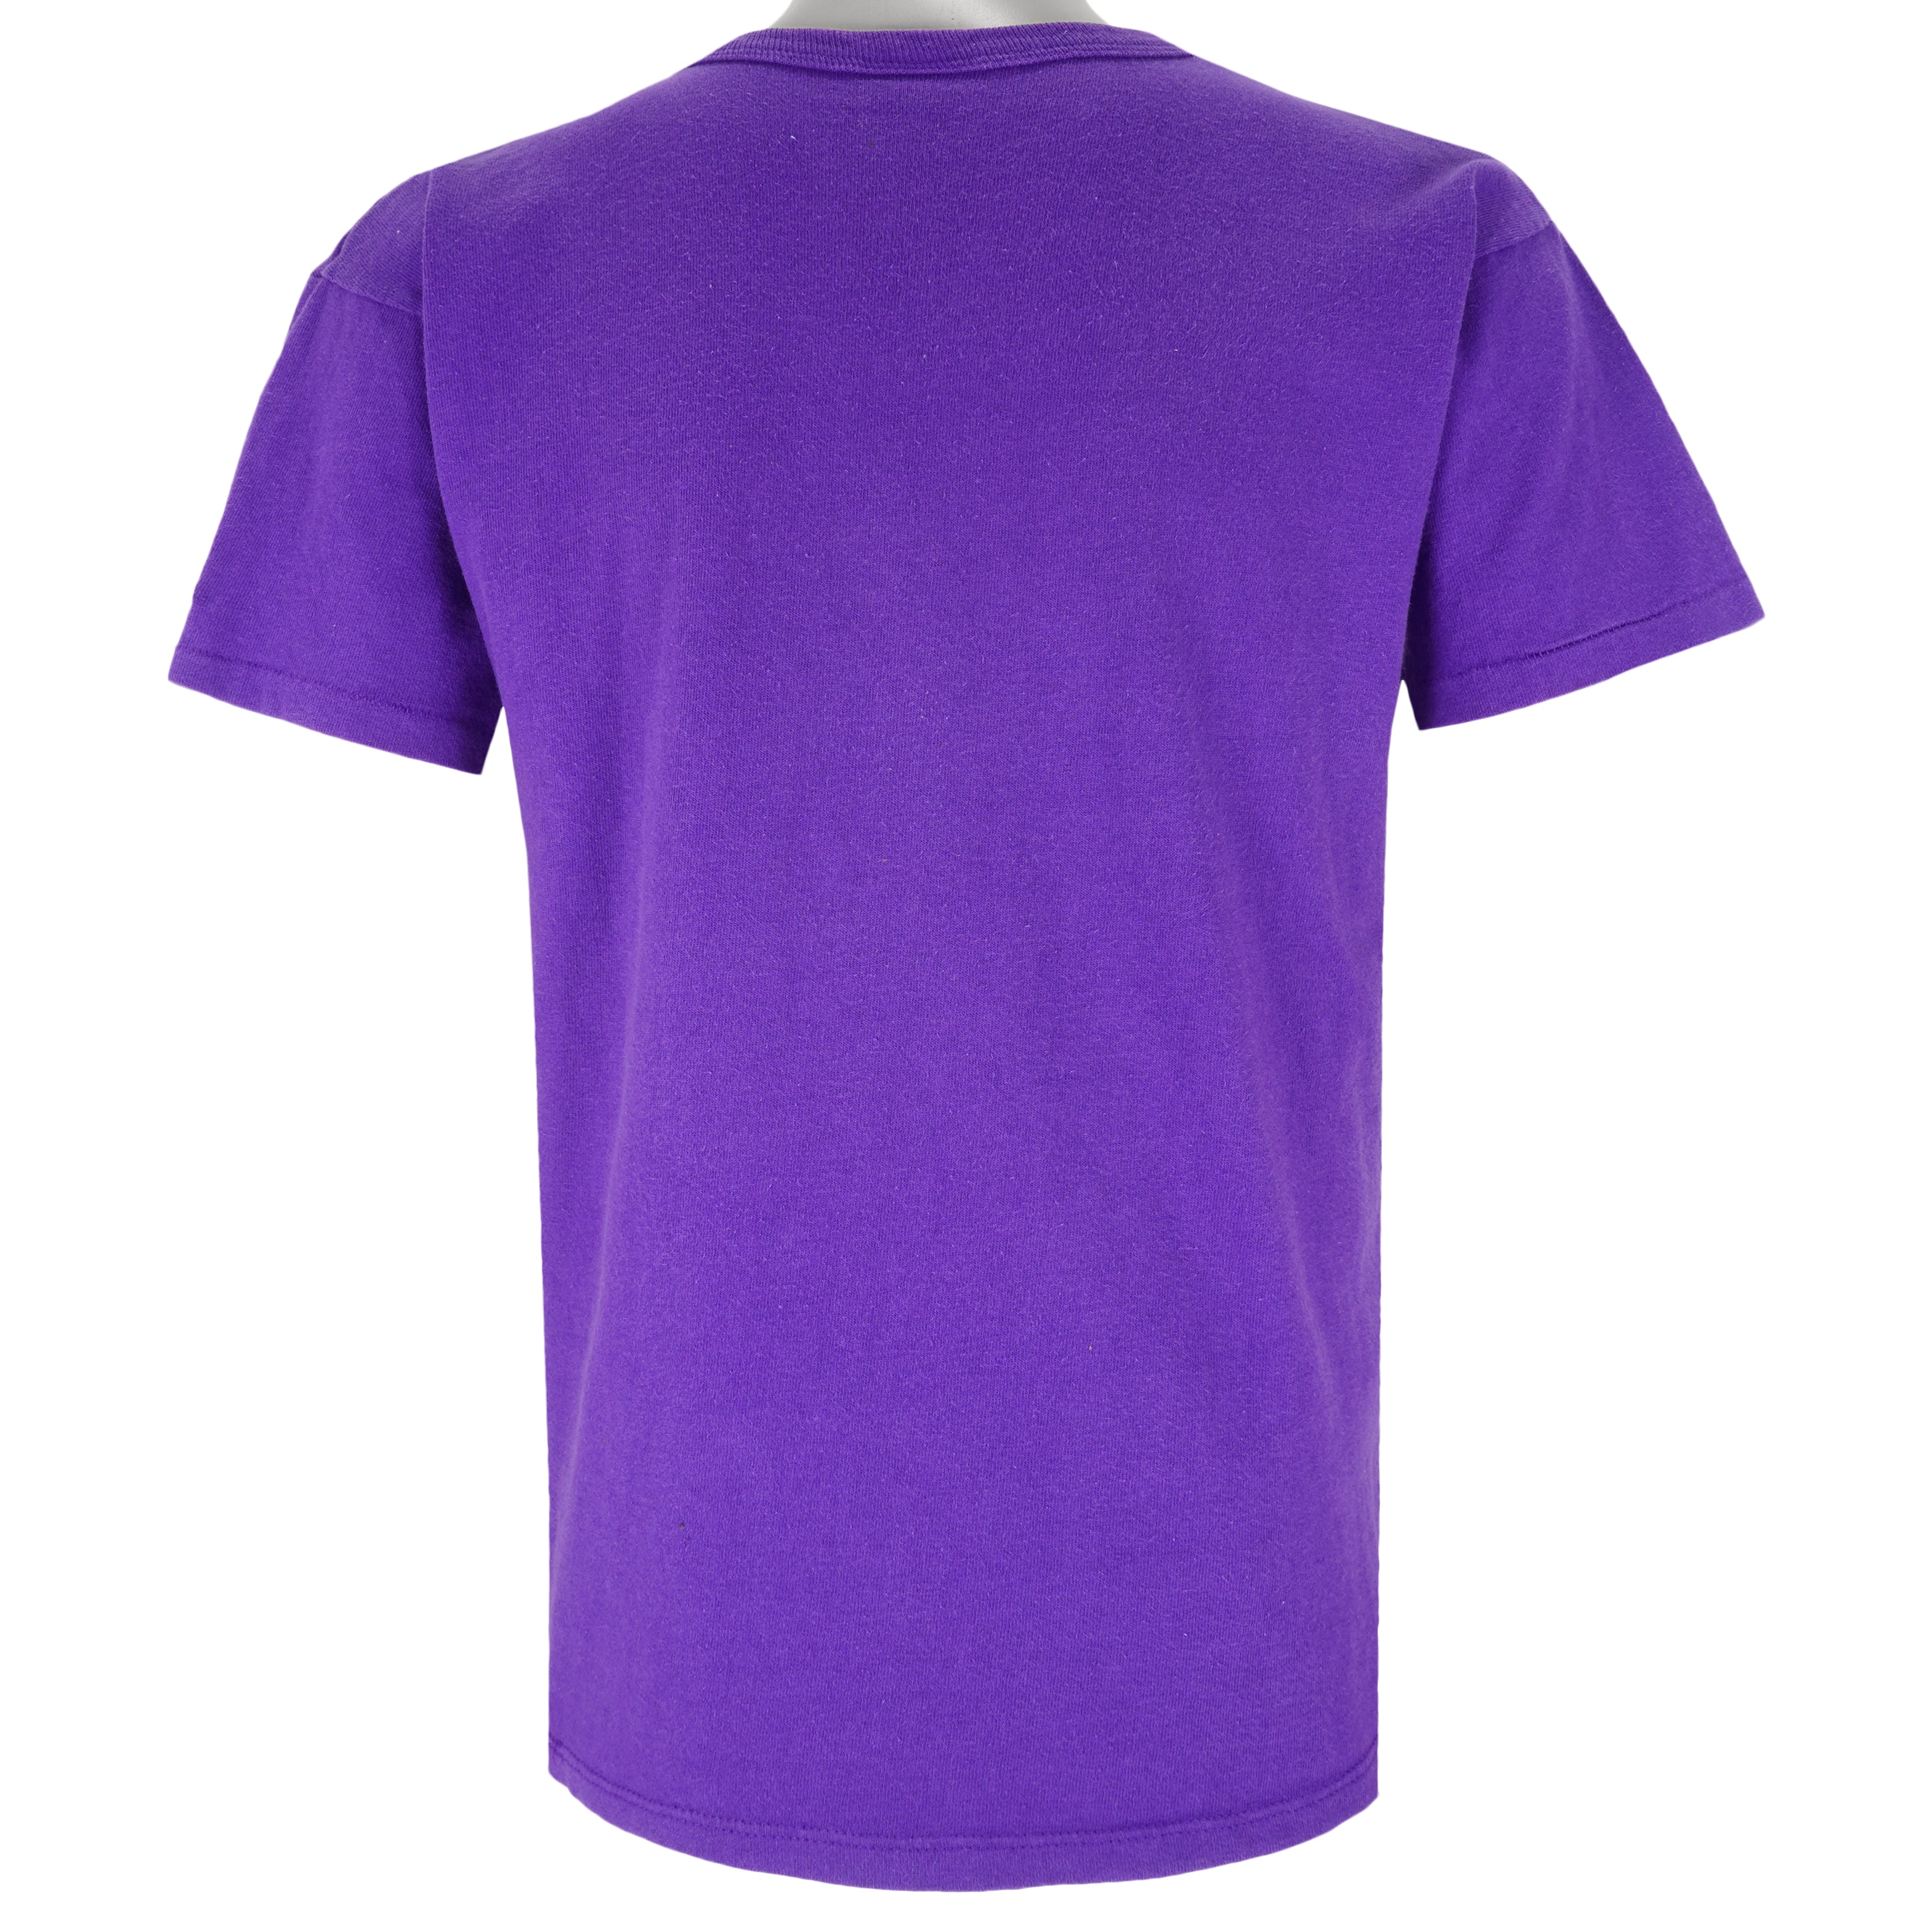 Vintage Champion - Purple Phoenix Suns T-Shirt 1990s Large